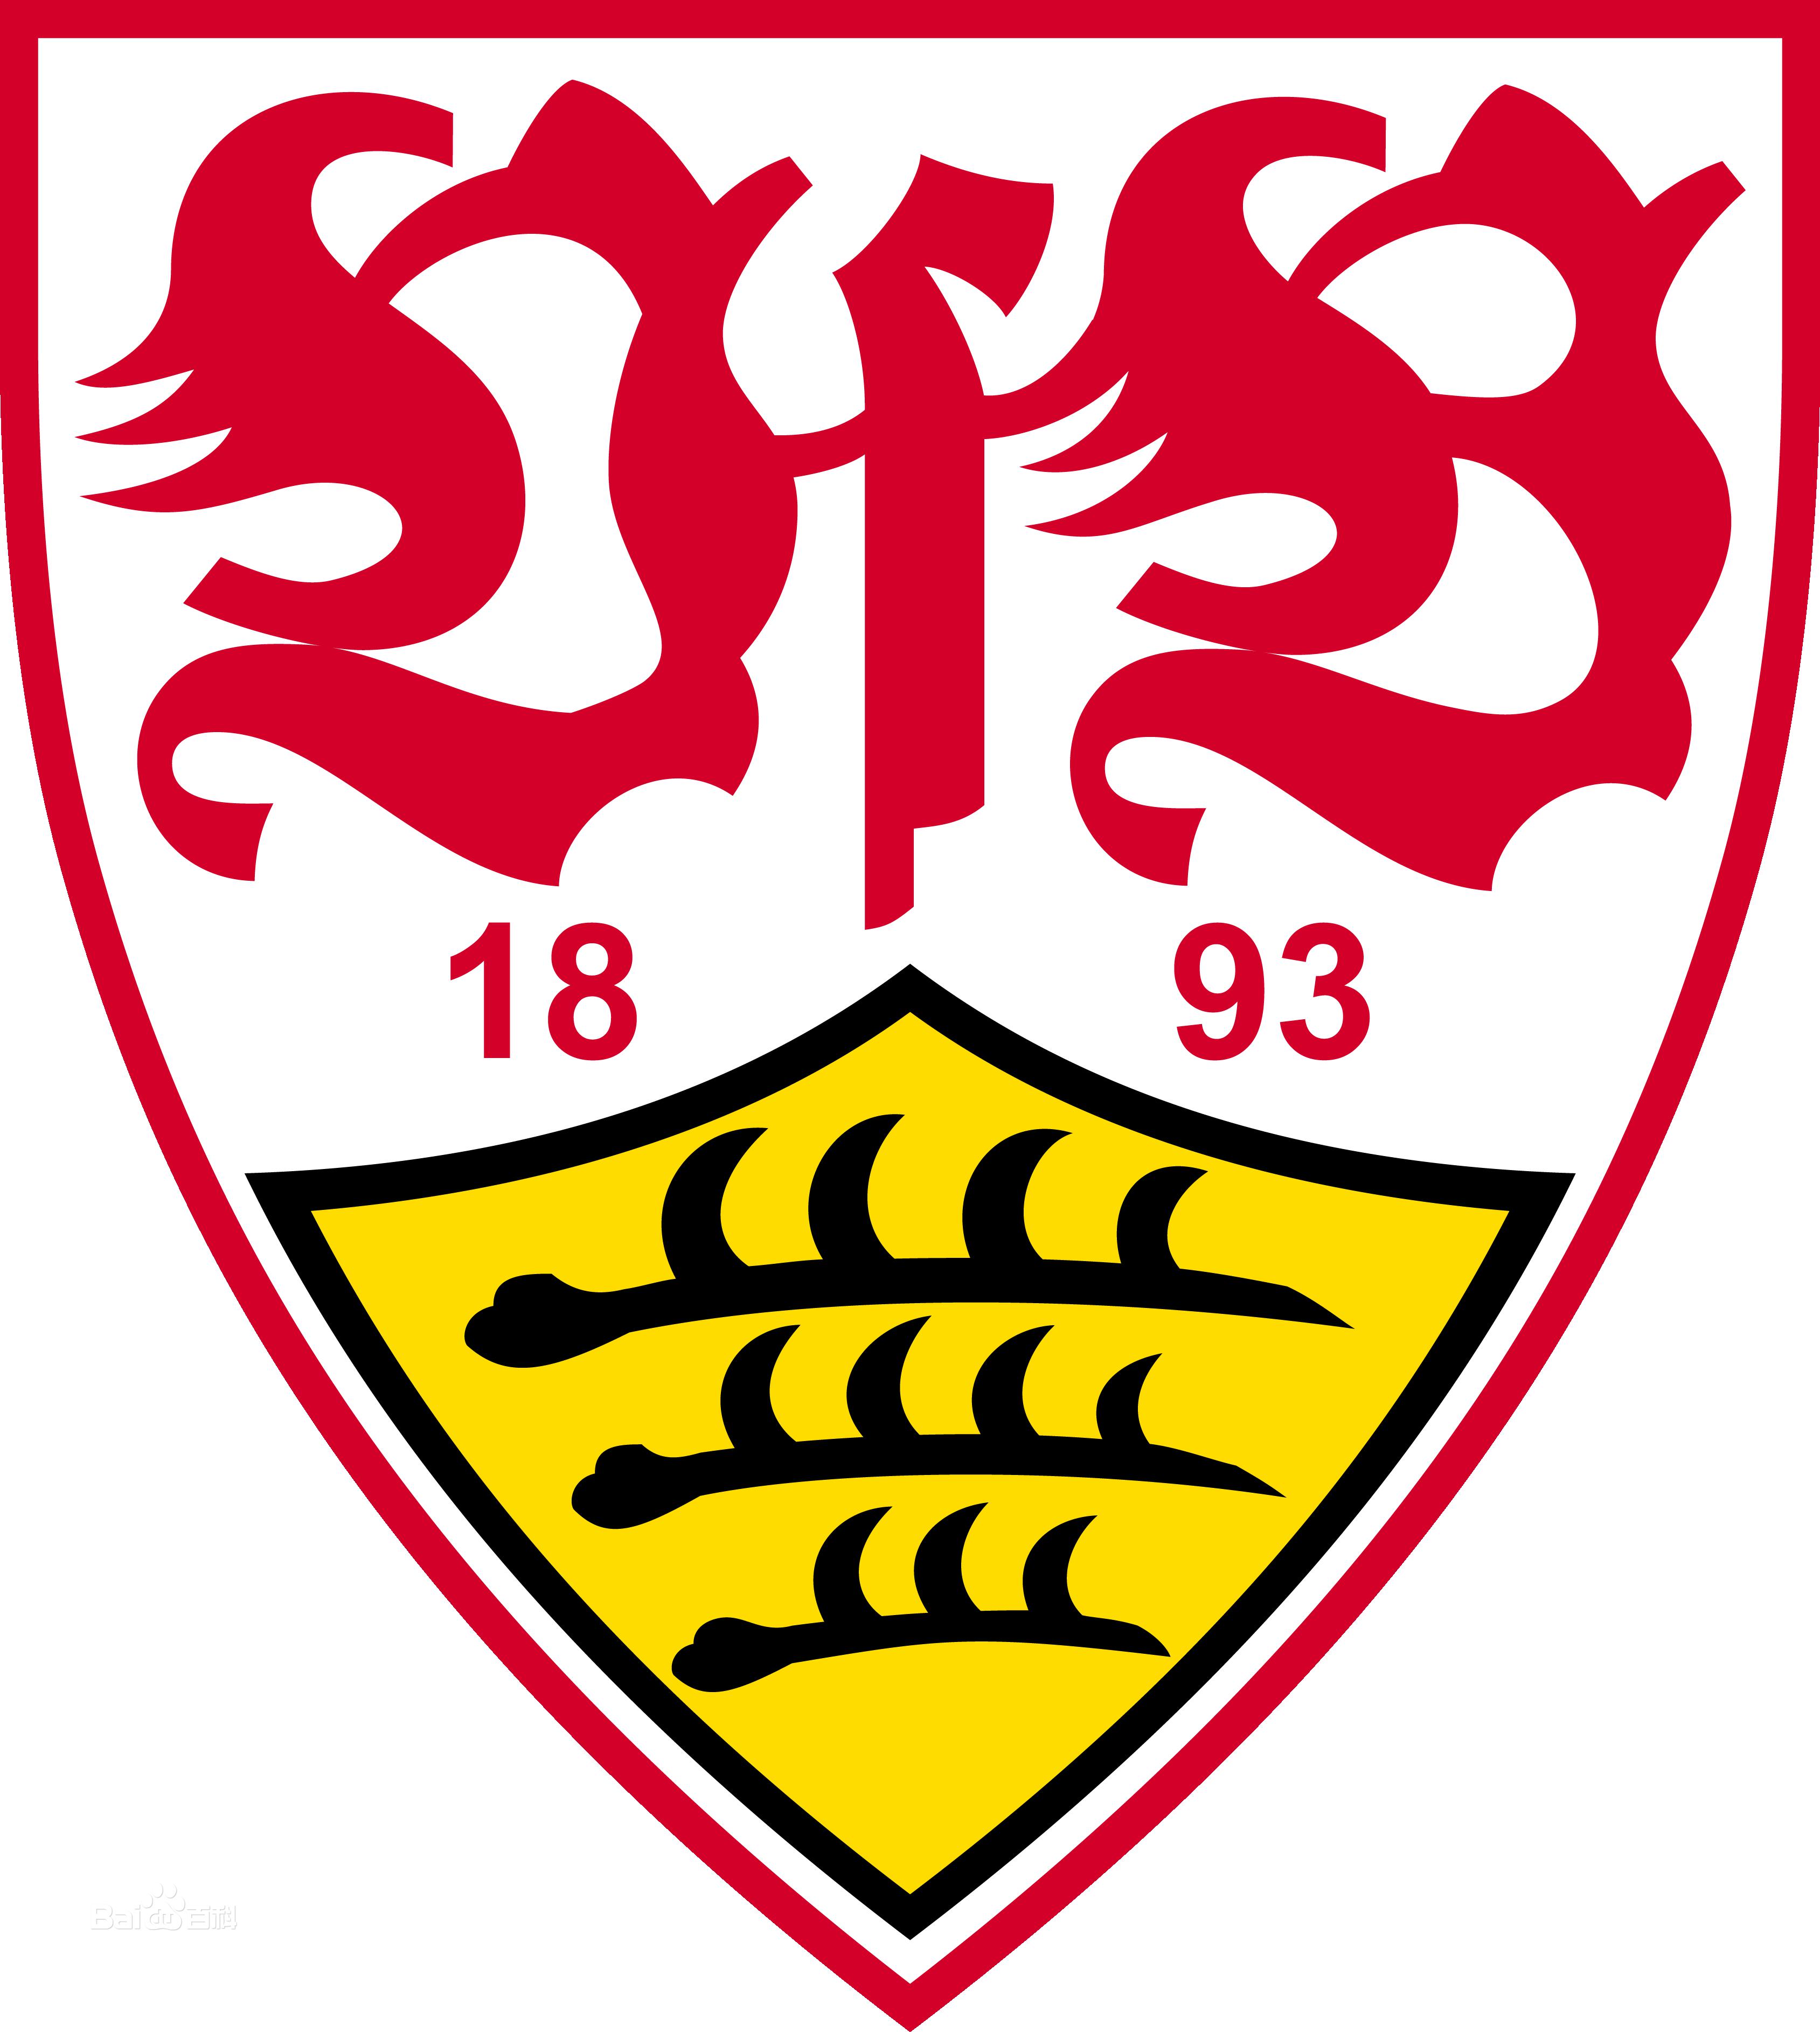 德甲俱乐部队徽大全 新赛季德甲球队队徽(16)